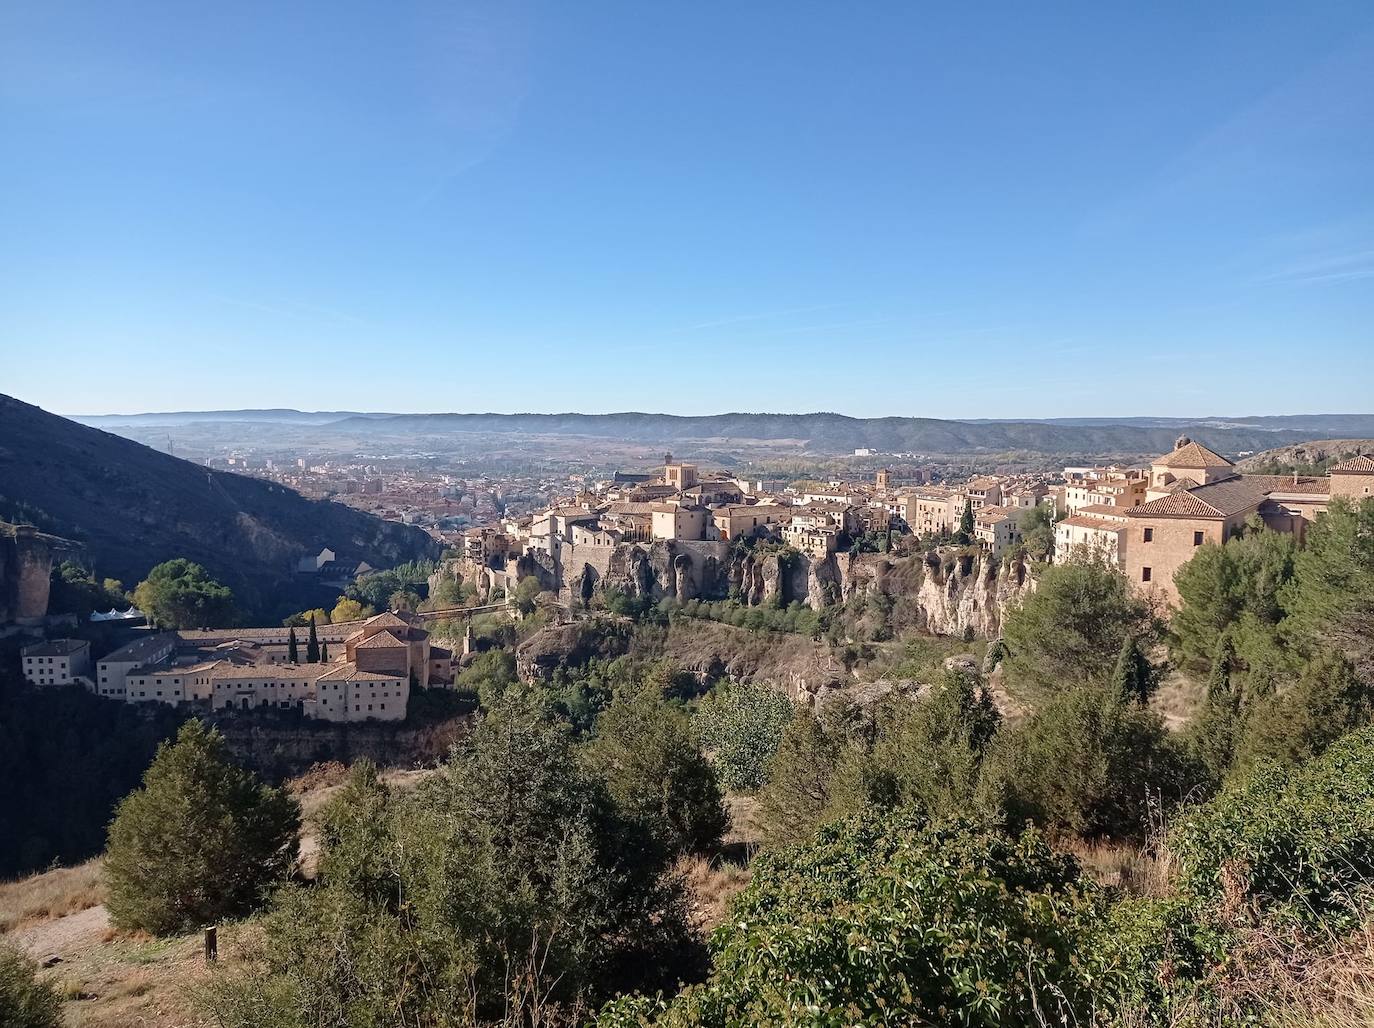 La tirolina urbana doble más larga de Europa en una de las ciudades más bonitas de España